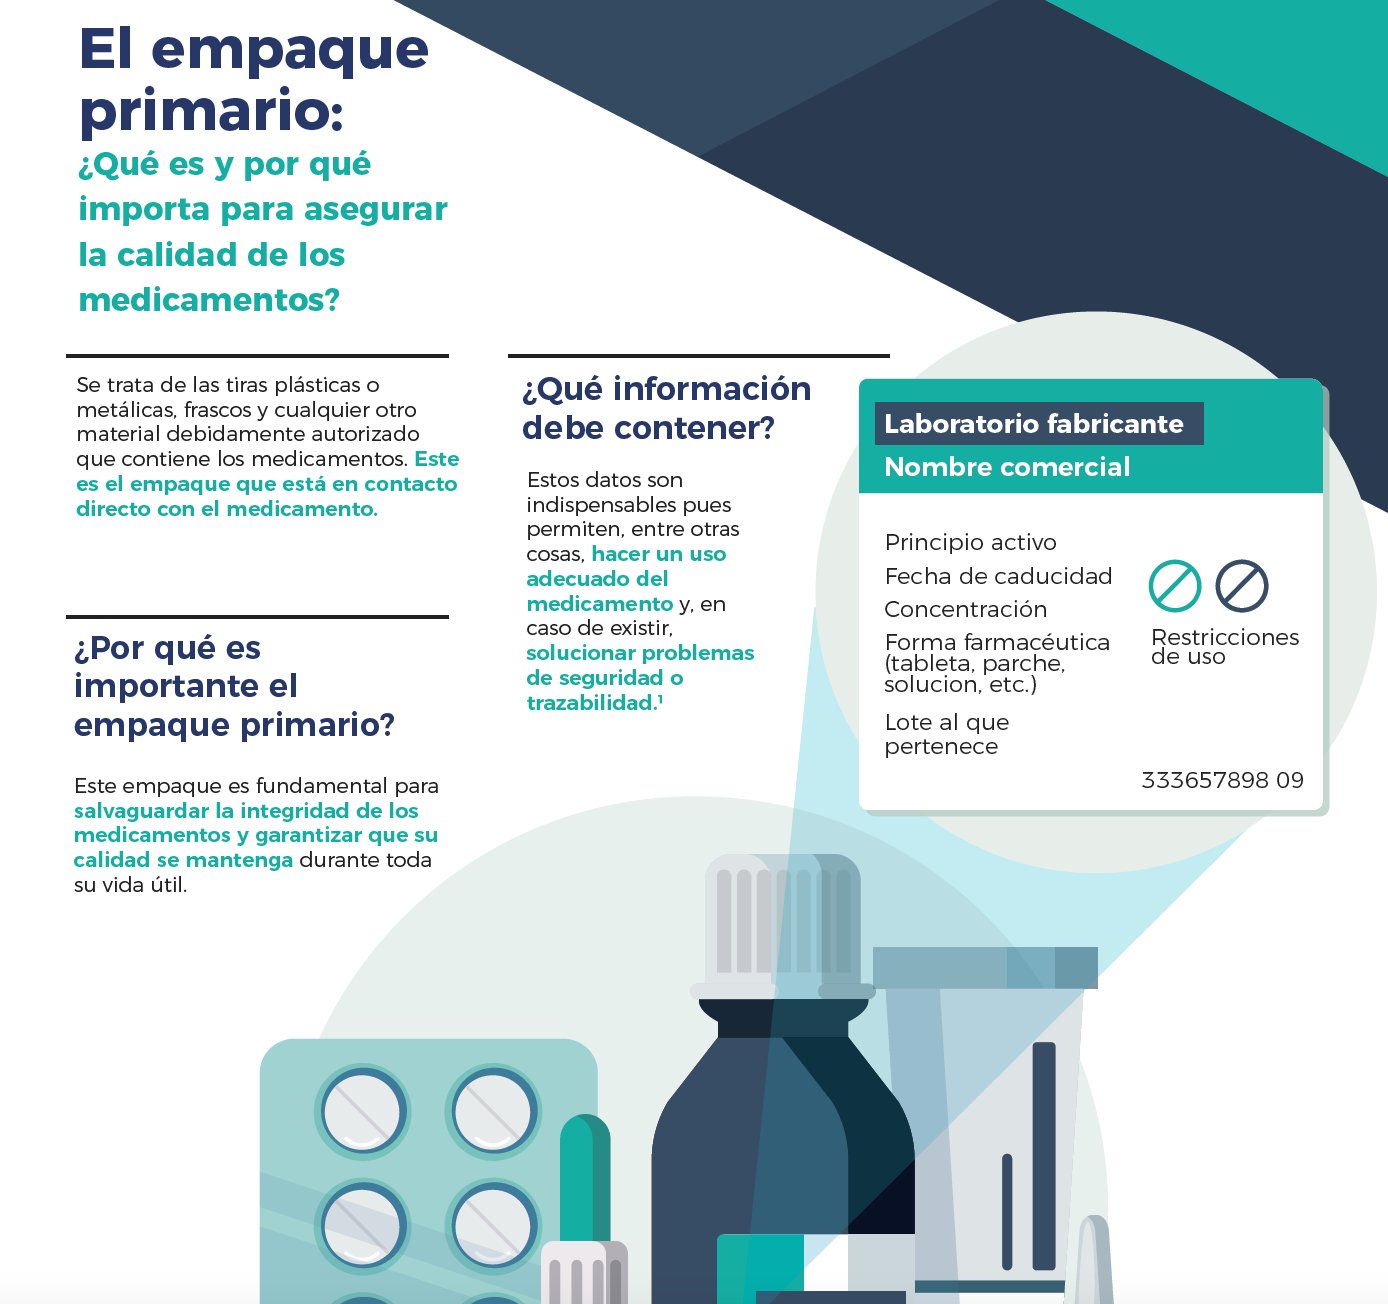 AMIIF México on X: Y aquí encuentran más detalles sobre por qué los  requerimientos para el etiquetado de medicamentos (en envase primario),  están fuera del marco normativo vigente, y además generan una